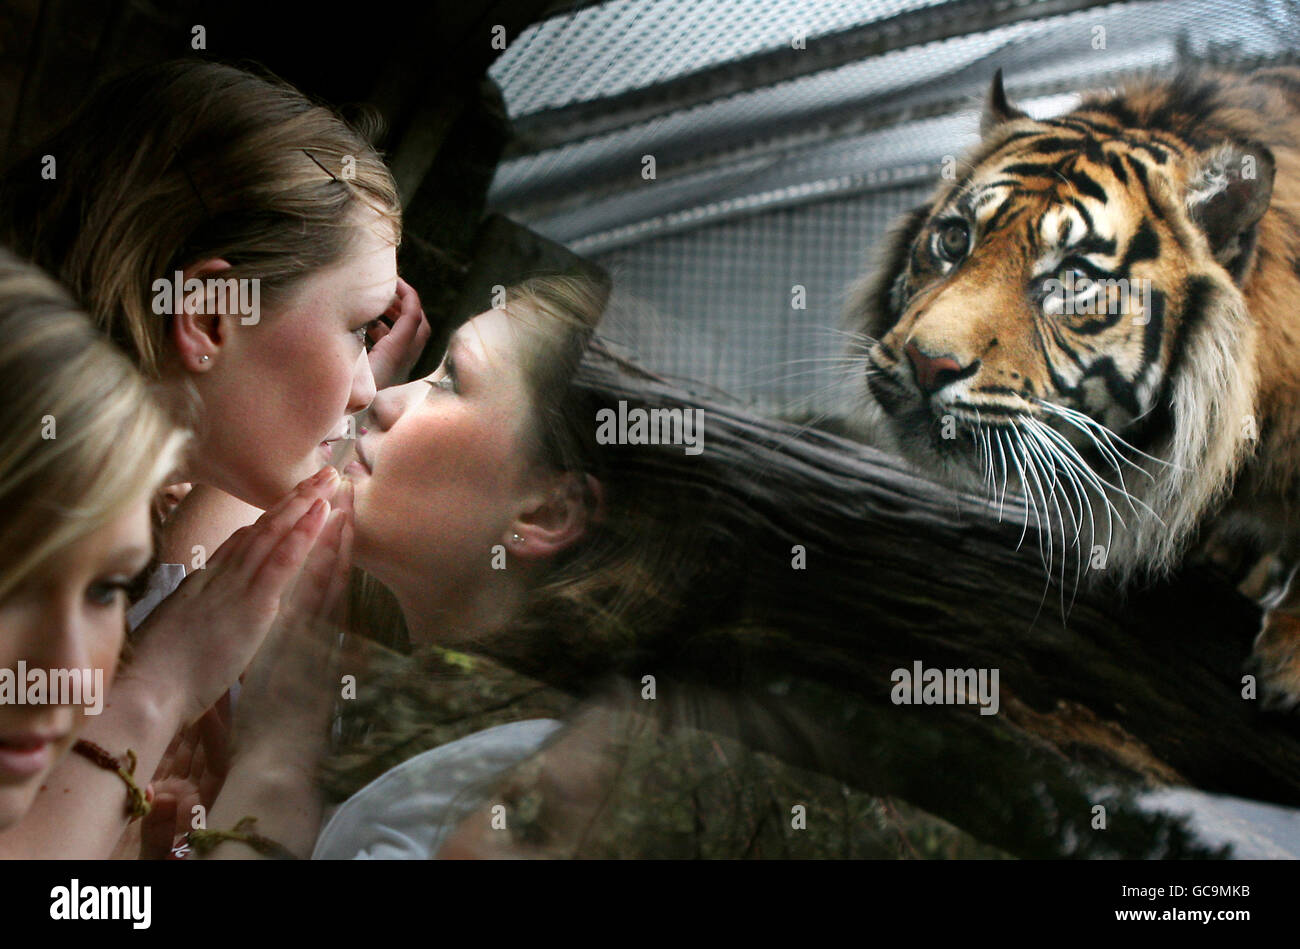 School children meet tigers Stock Photo